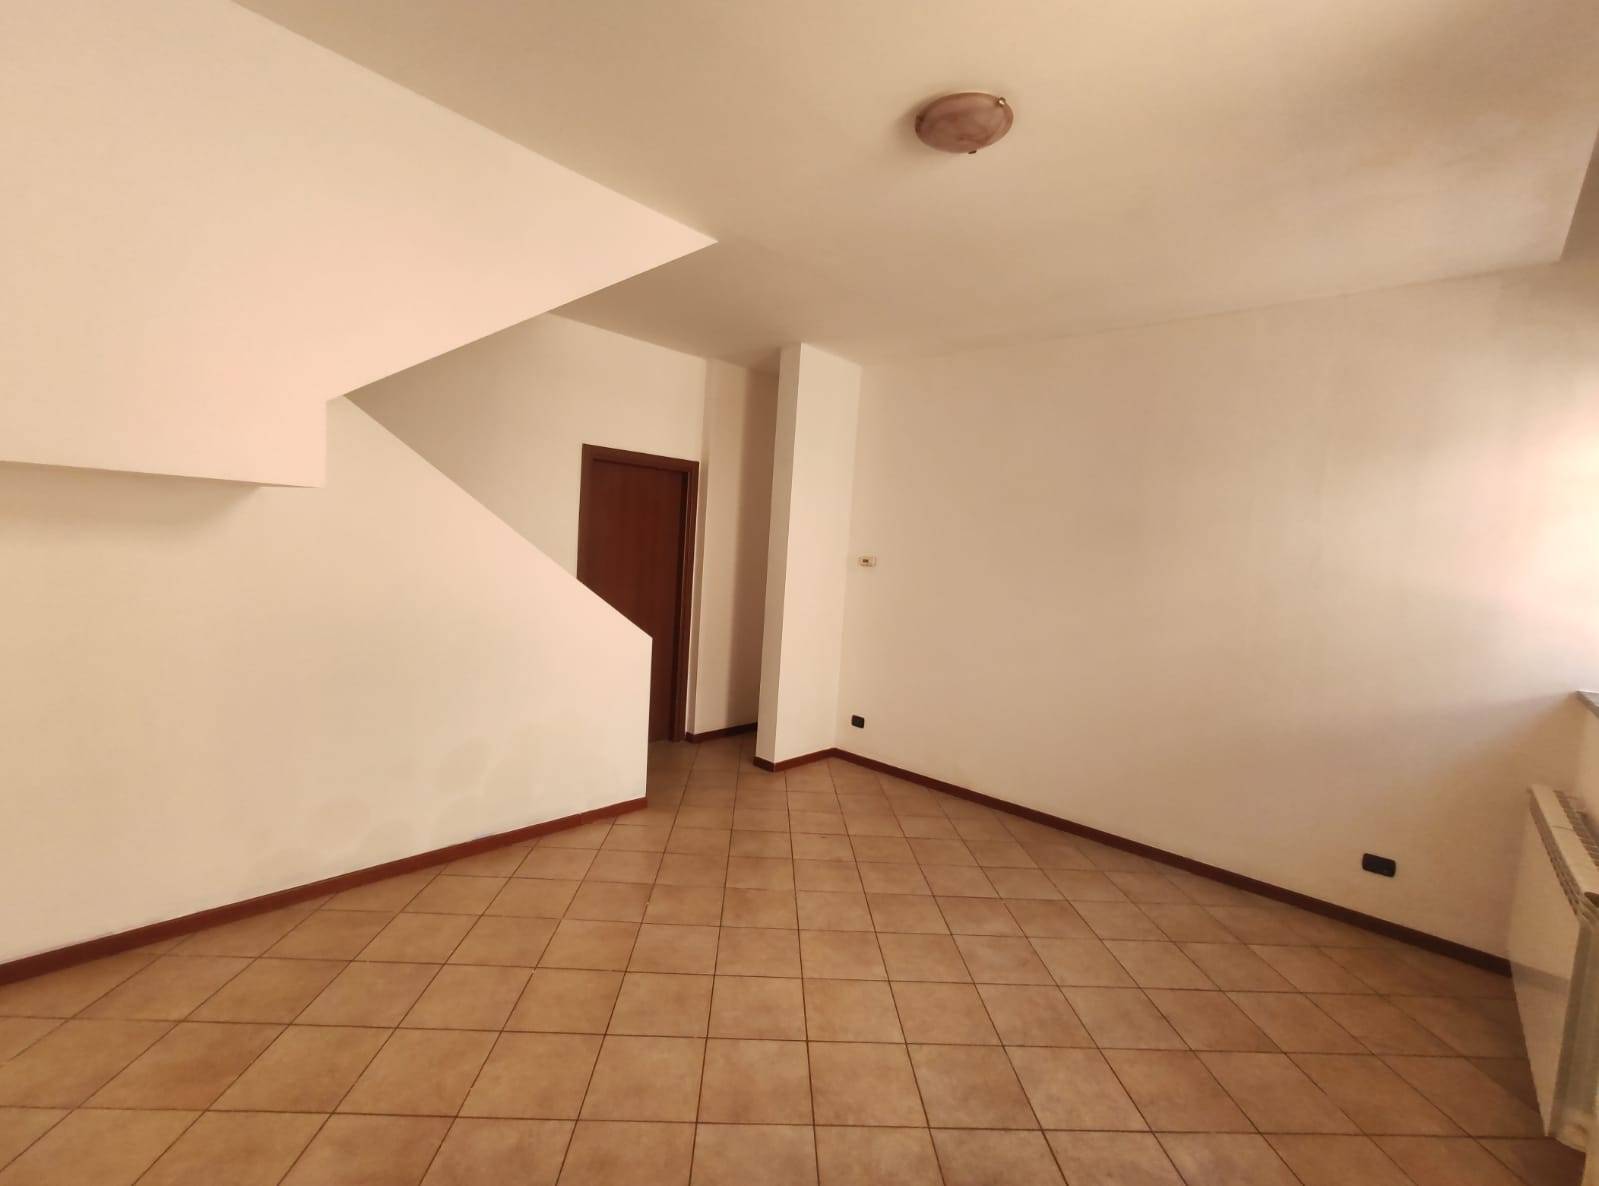 Appartamento in vendita a Marnate, 3 locali, prezzo € 85.000 | PortaleAgenzieImmobiliari.it